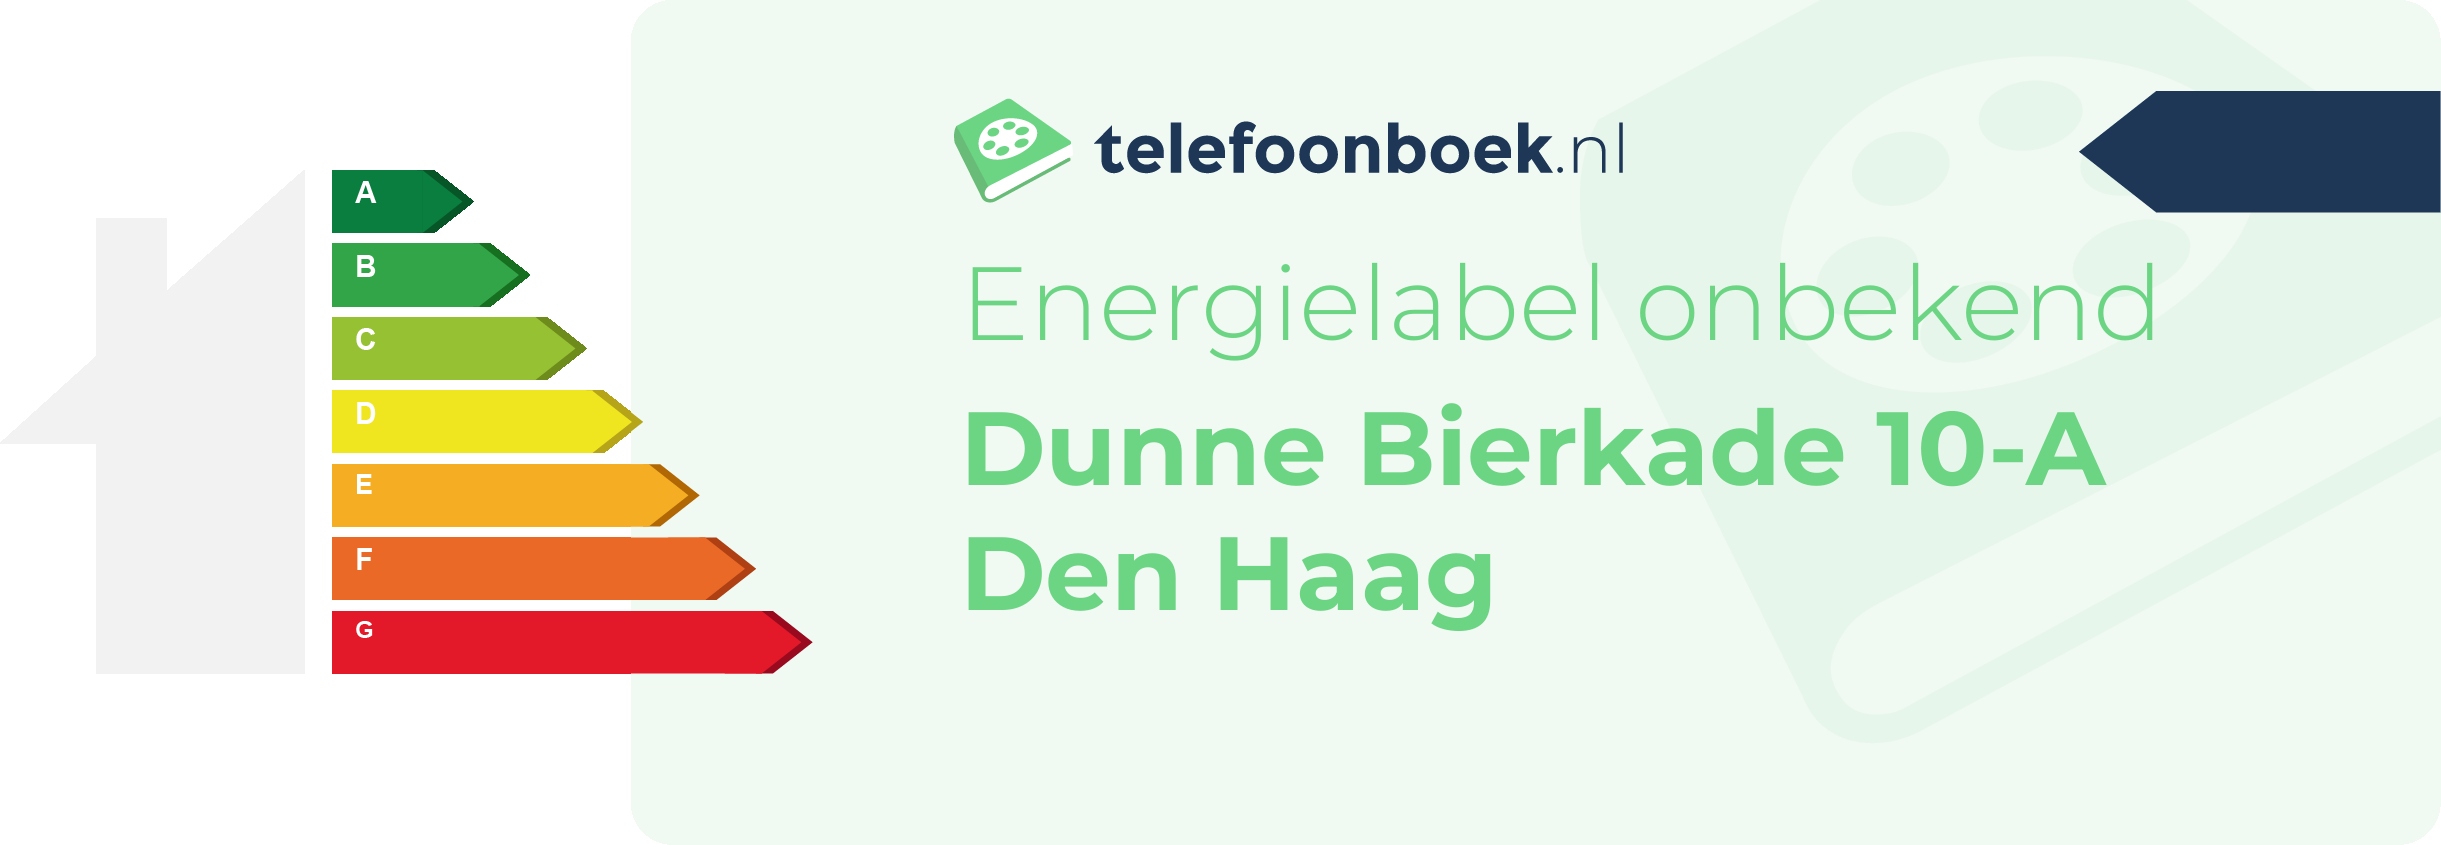 Energielabel Dunne Bierkade 10-A Den Haag